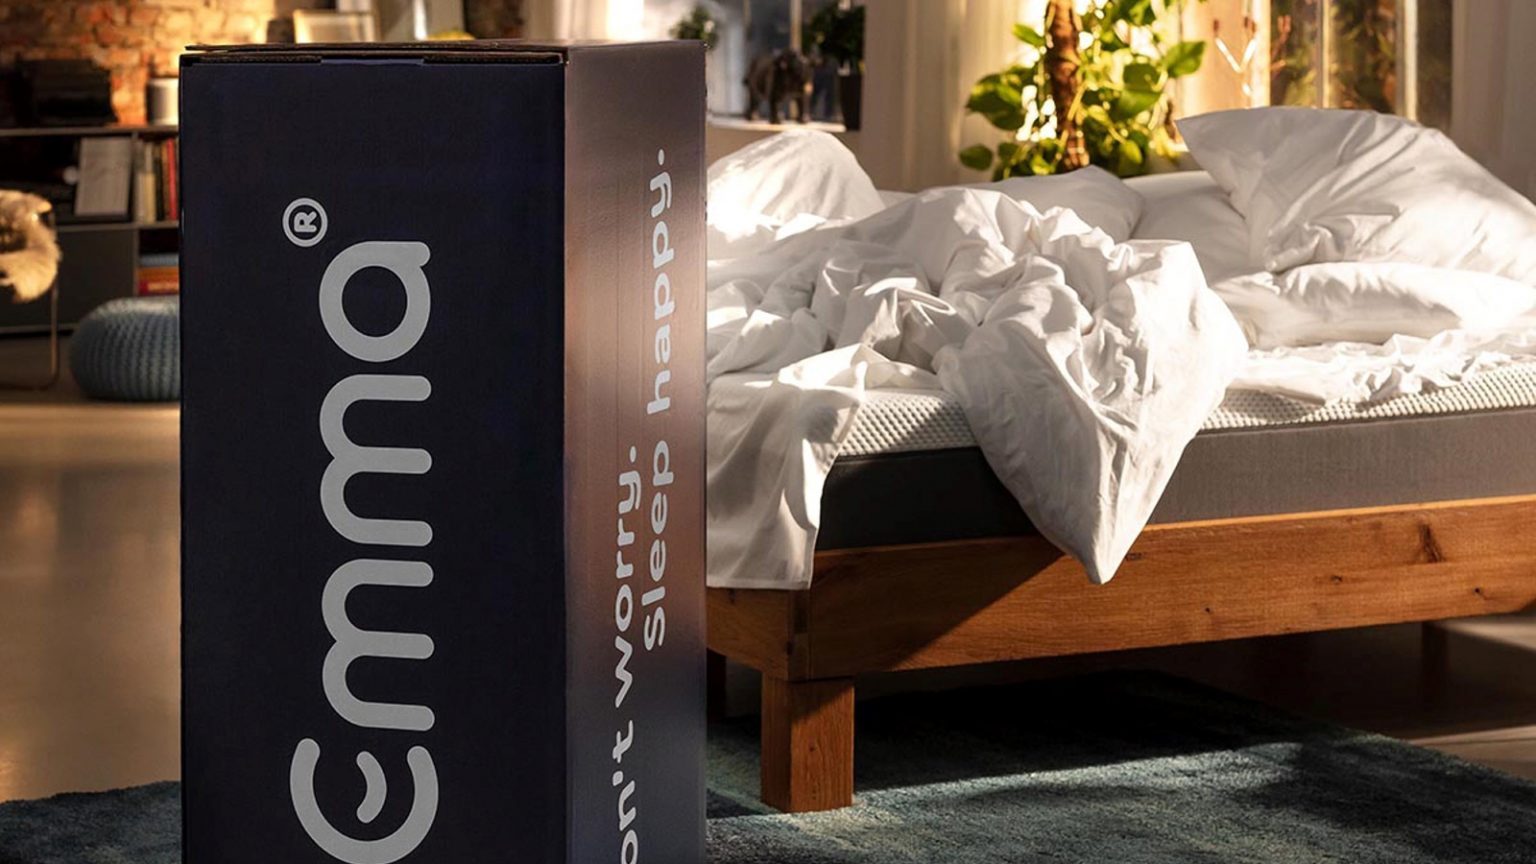 emma mattress price match